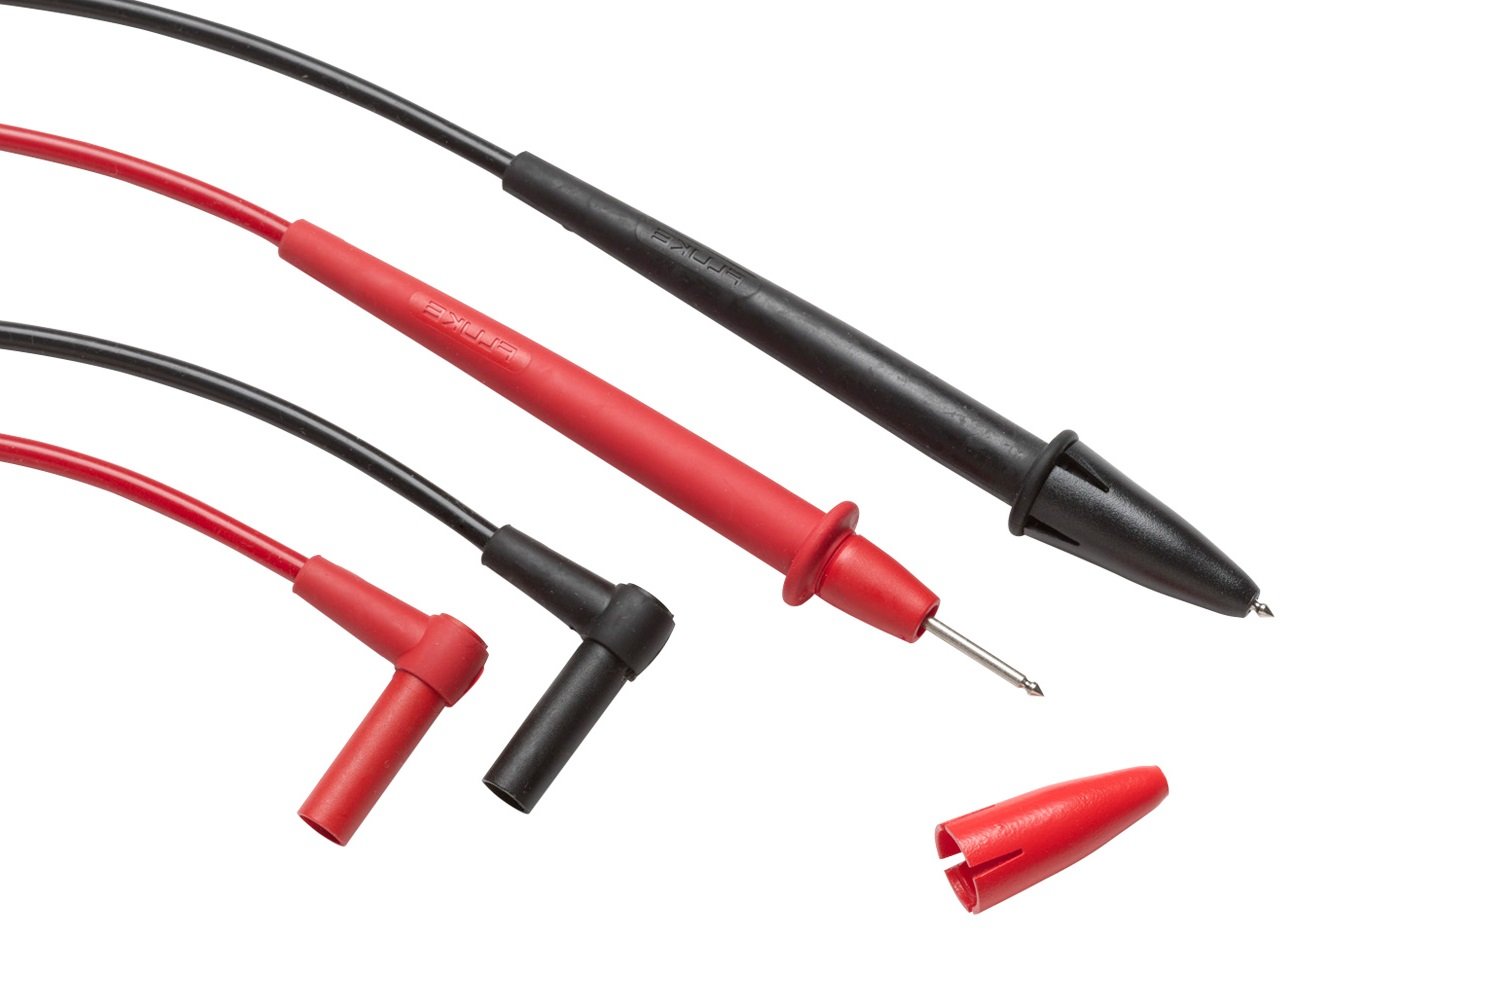 Test Lead Kit for Fluke Multimeter Tester Leads Probe Electronic Needle Clip Set 